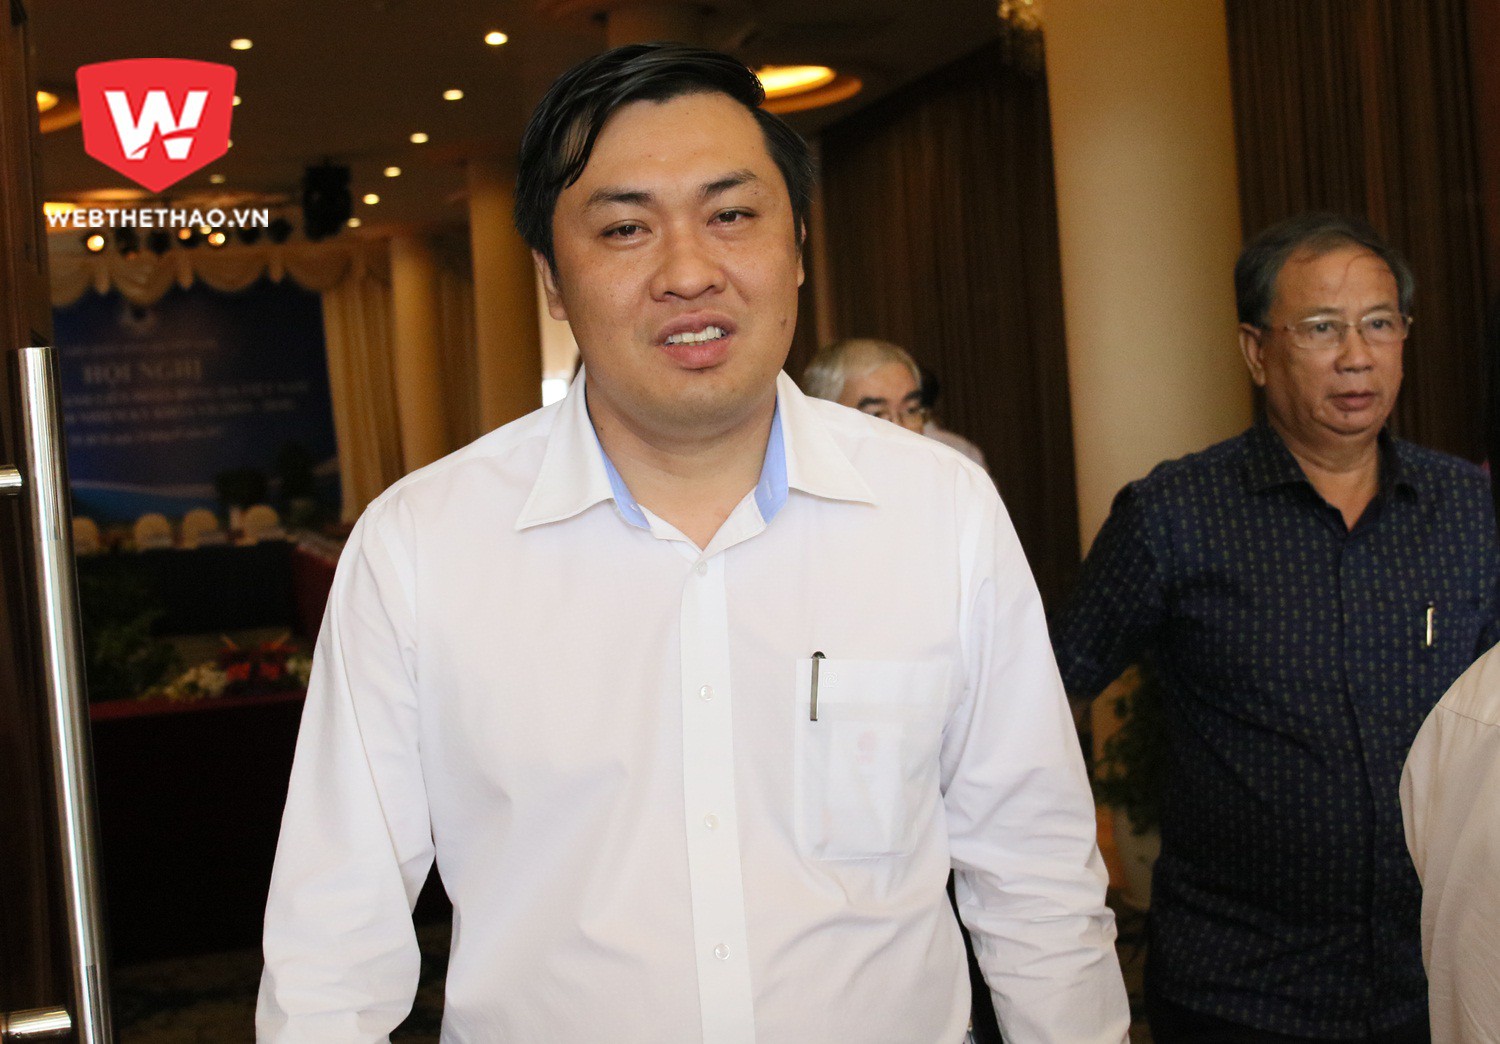 Ông Cao Văn Chóng đã báo cáo về các giải đấu chuyên nghiệp. Ảnh: Văn Nhân